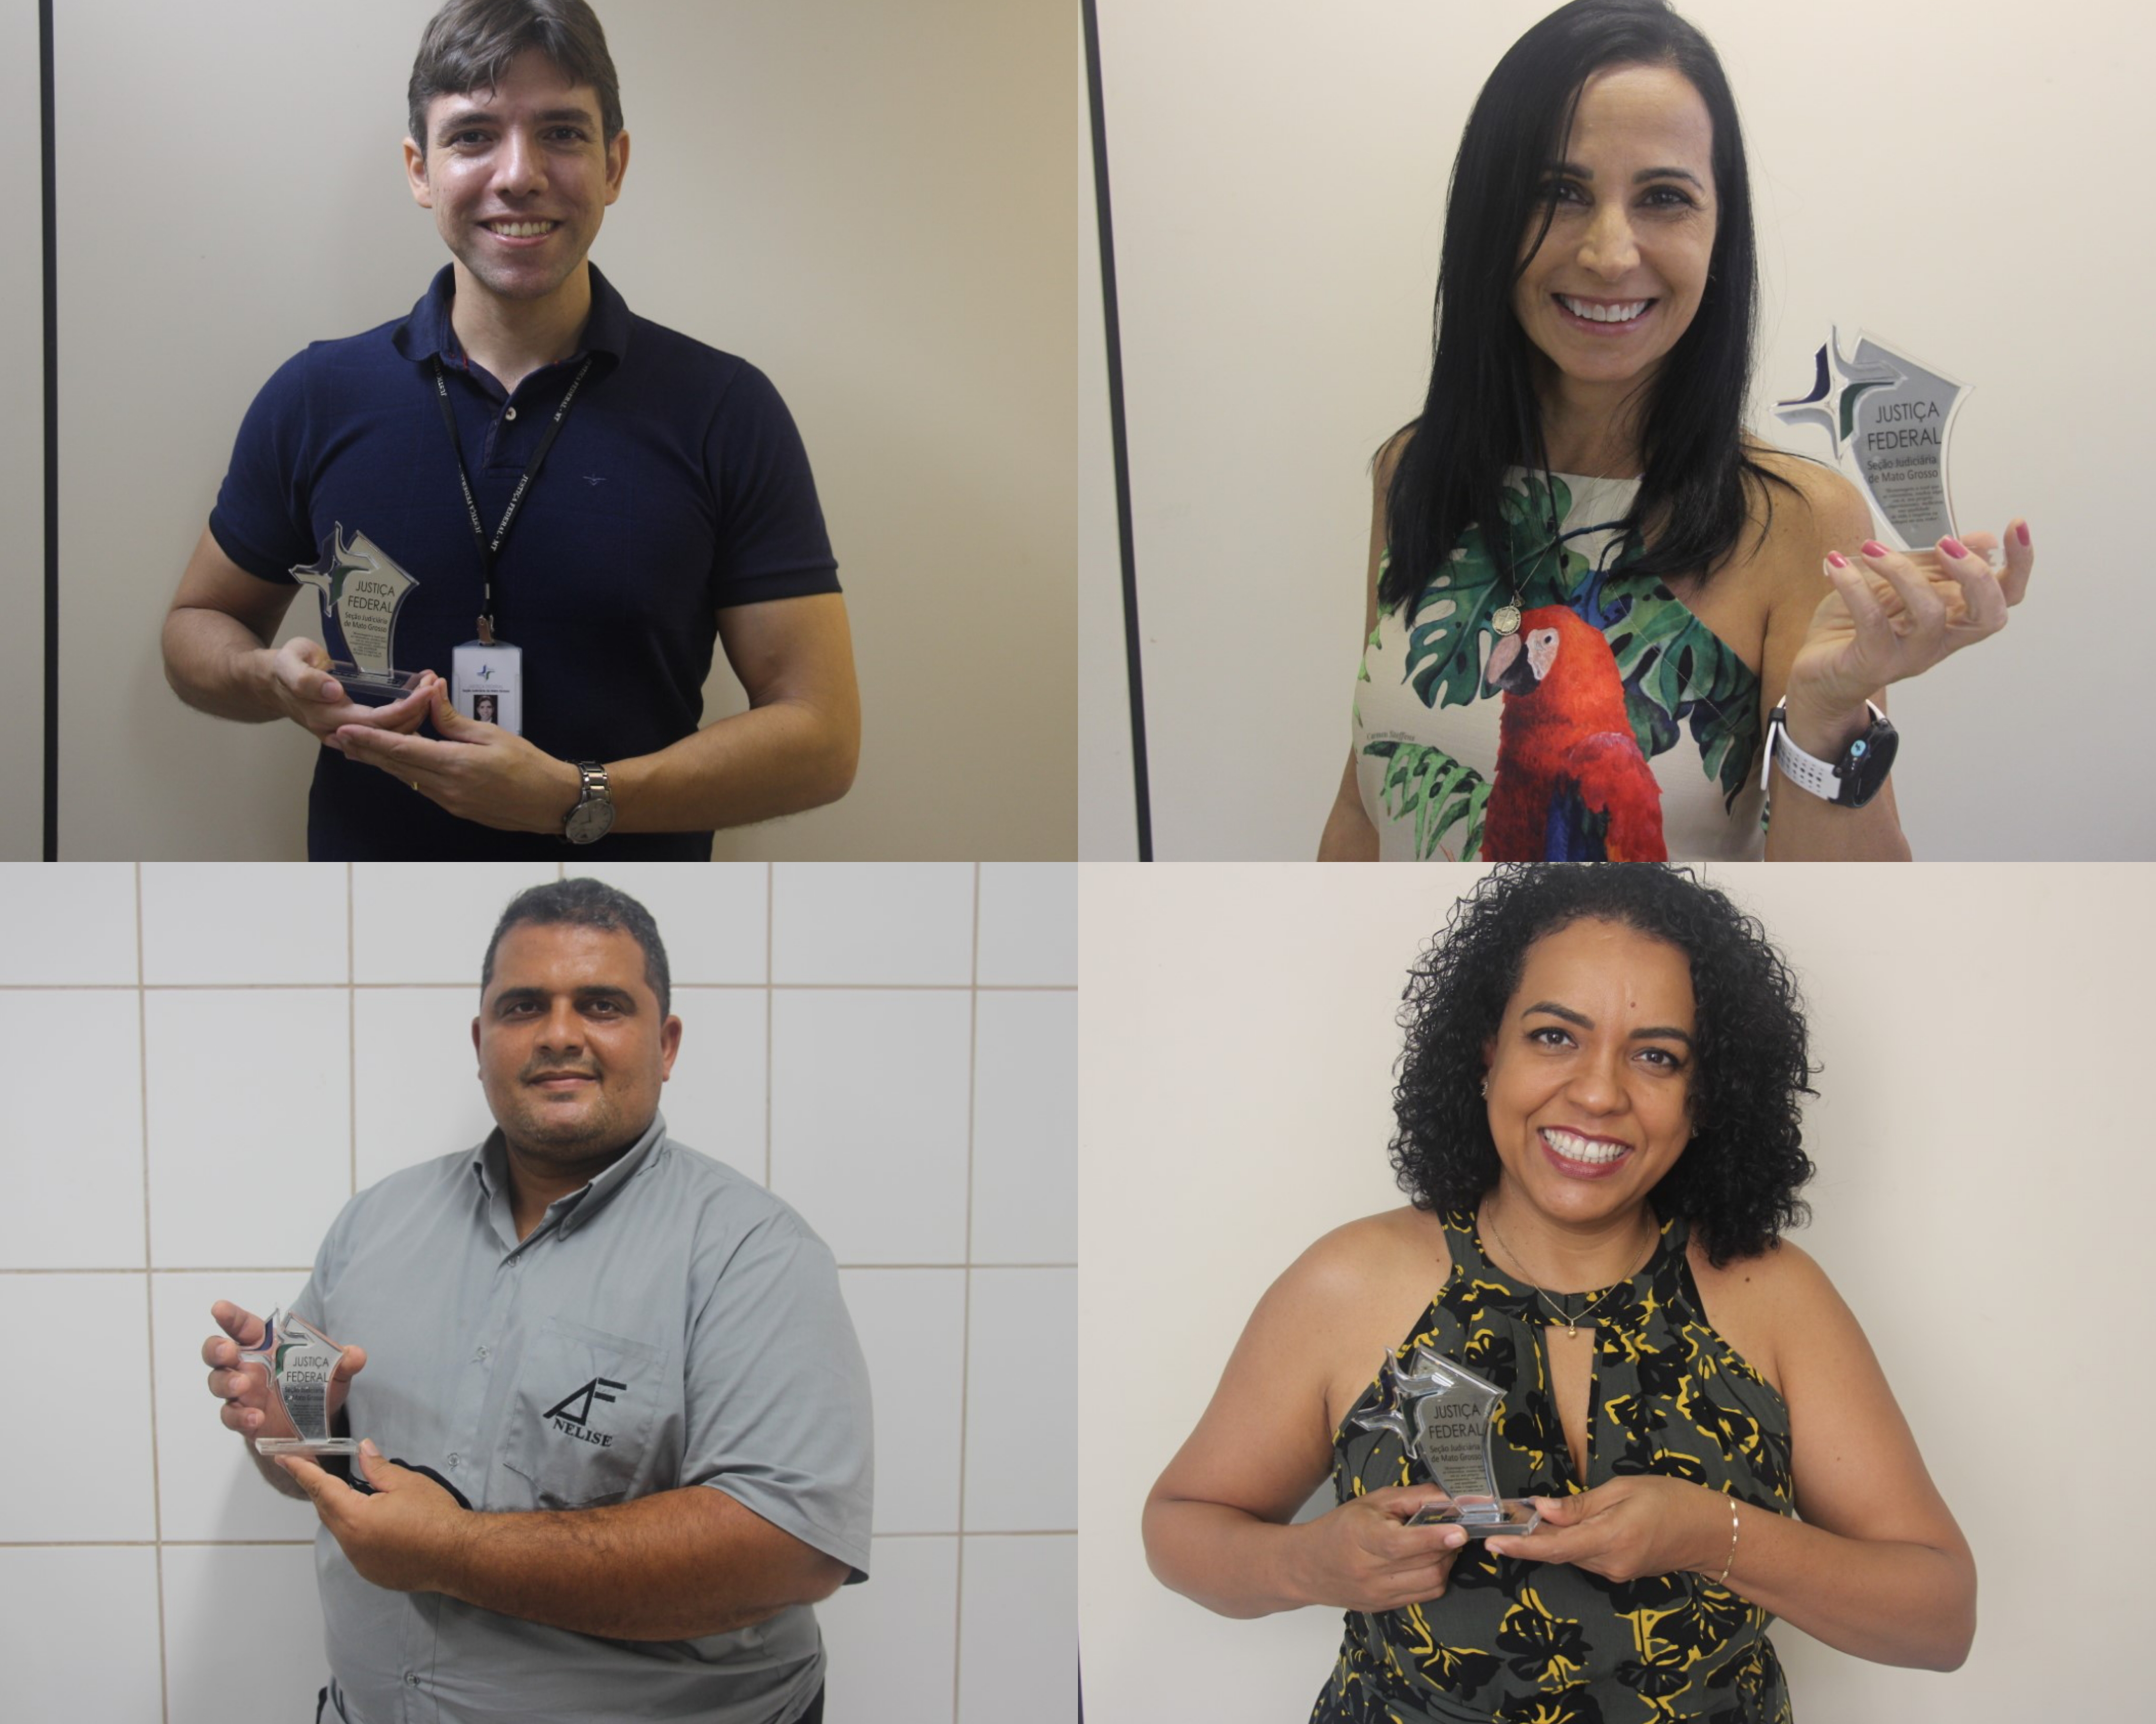 INSTITUCIONAL: Servidores da Seção Judiciária de Mato Grosso recebem Prêmio "Top of Mind" SJMT